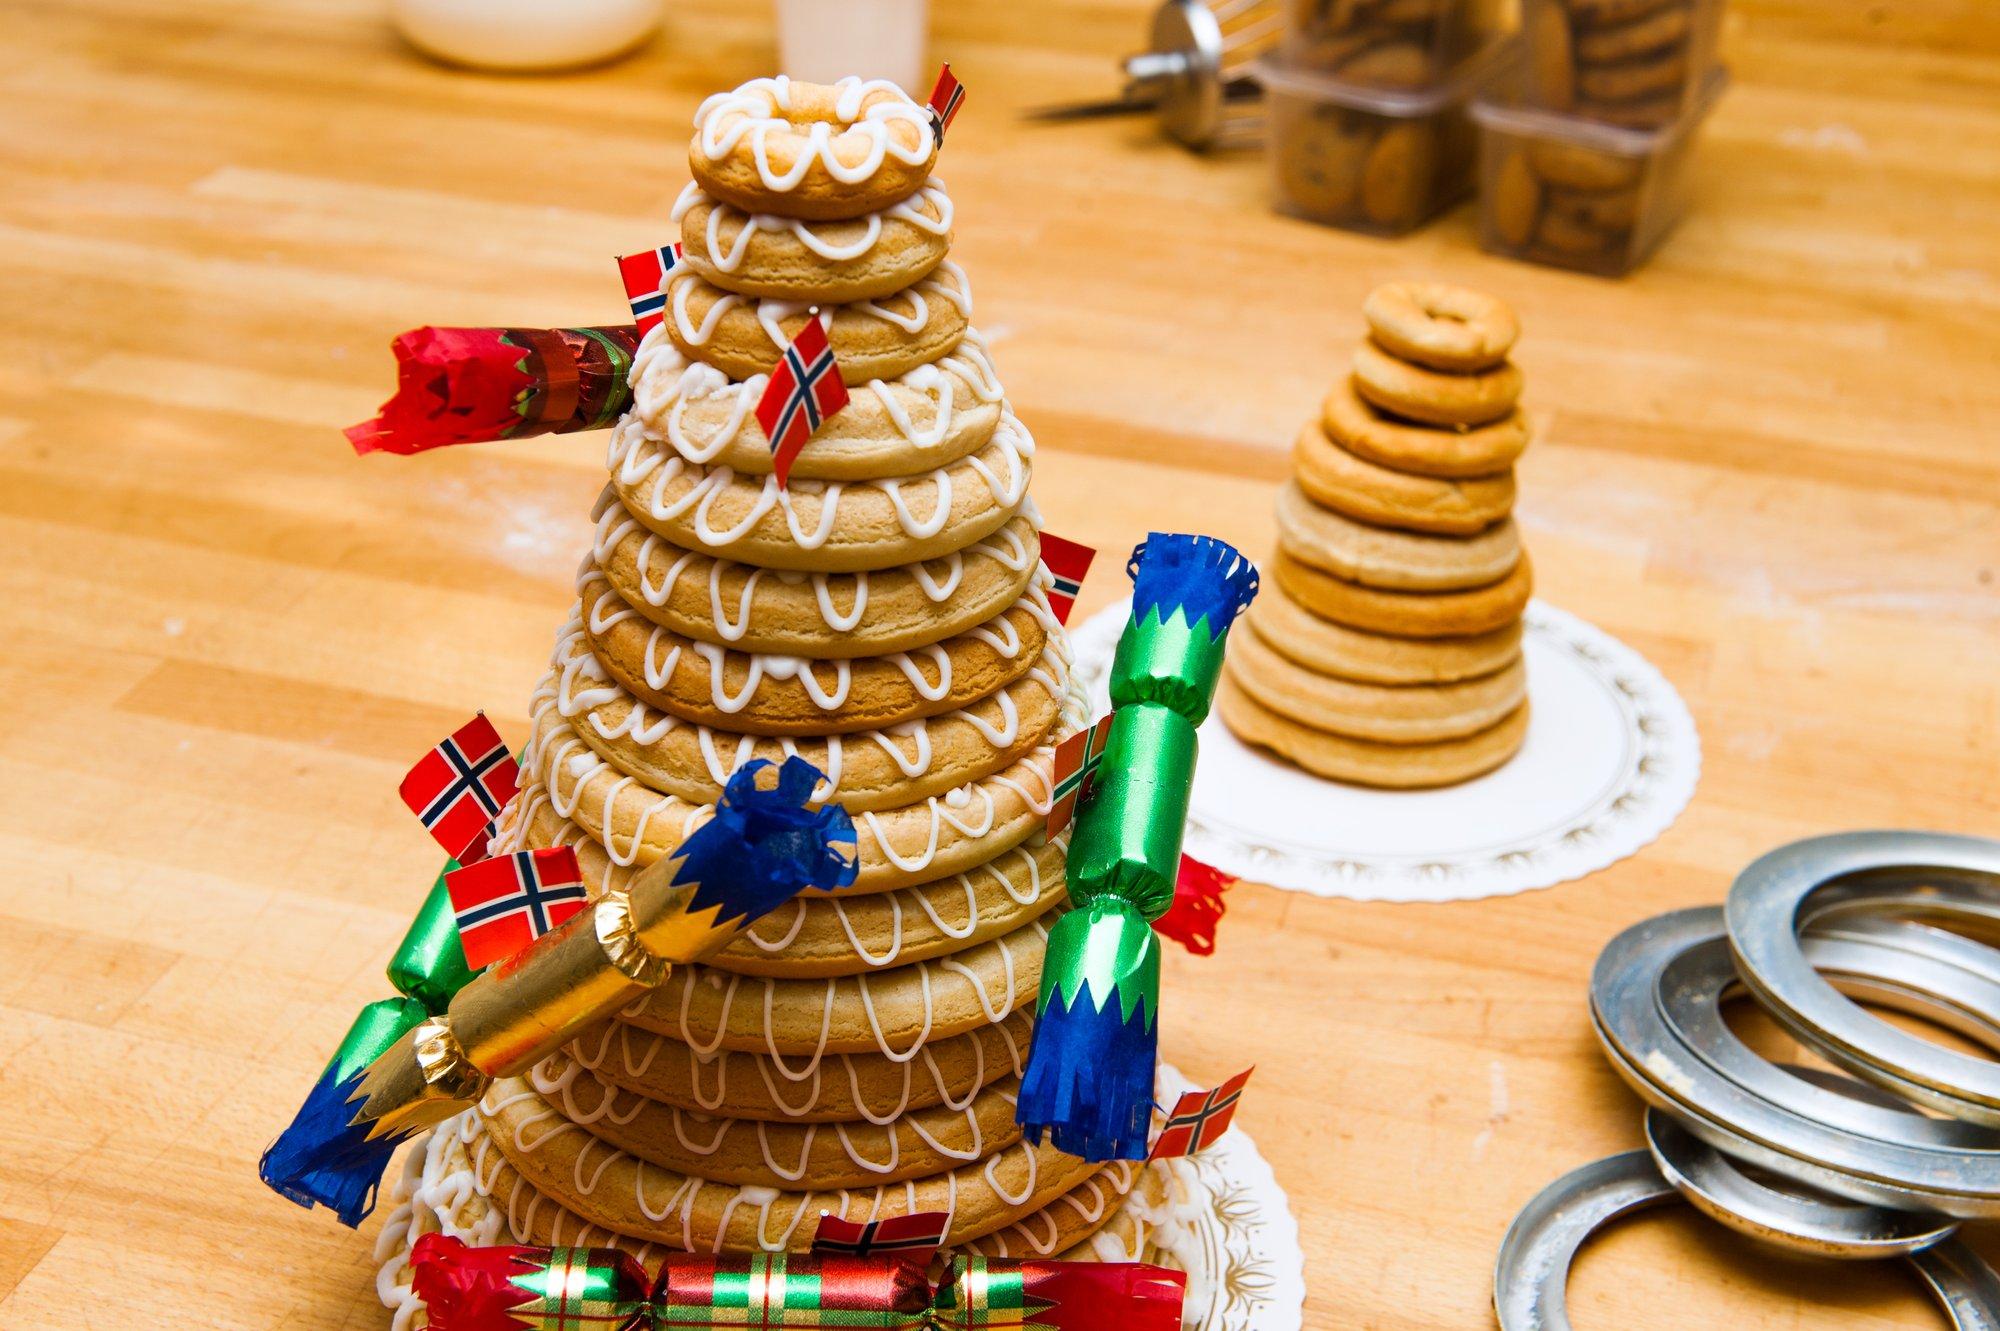 Norvegiškas skanėstas Kransekake – be galo gardi šventinio stalo puošmena